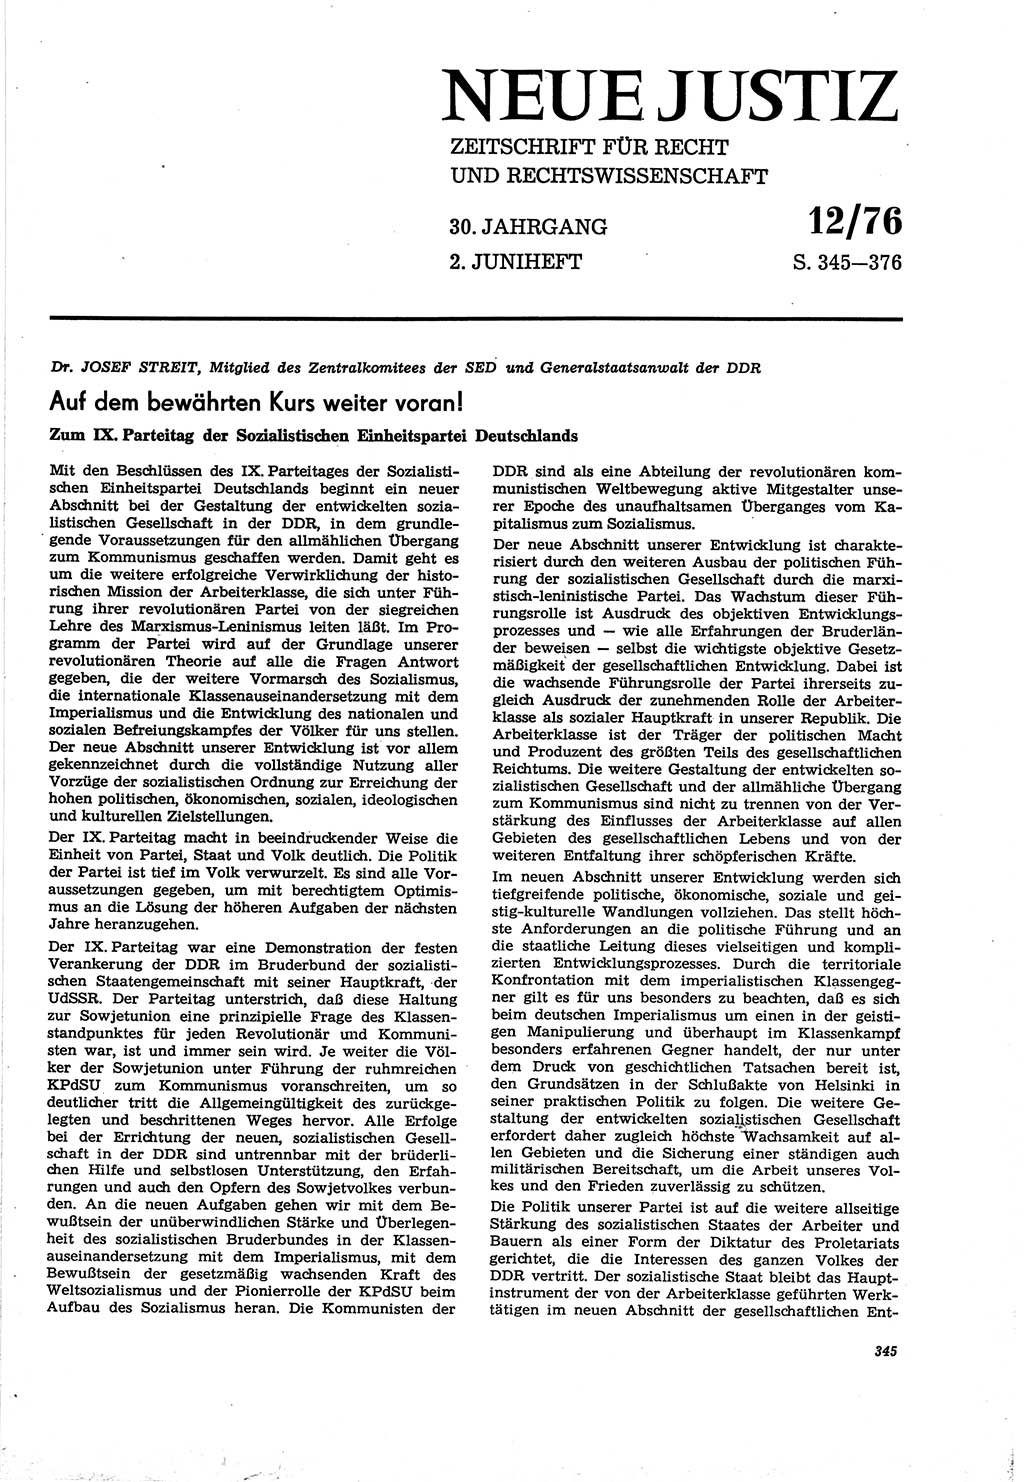 Neue Justiz (NJ), Zeitschrift für Recht und Rechtswissenschaft [Deutsche Demokratische Republik (DDR)], 30. Jahrgang 1976, Seite 345 (NJ DDR 1976, S. 345)